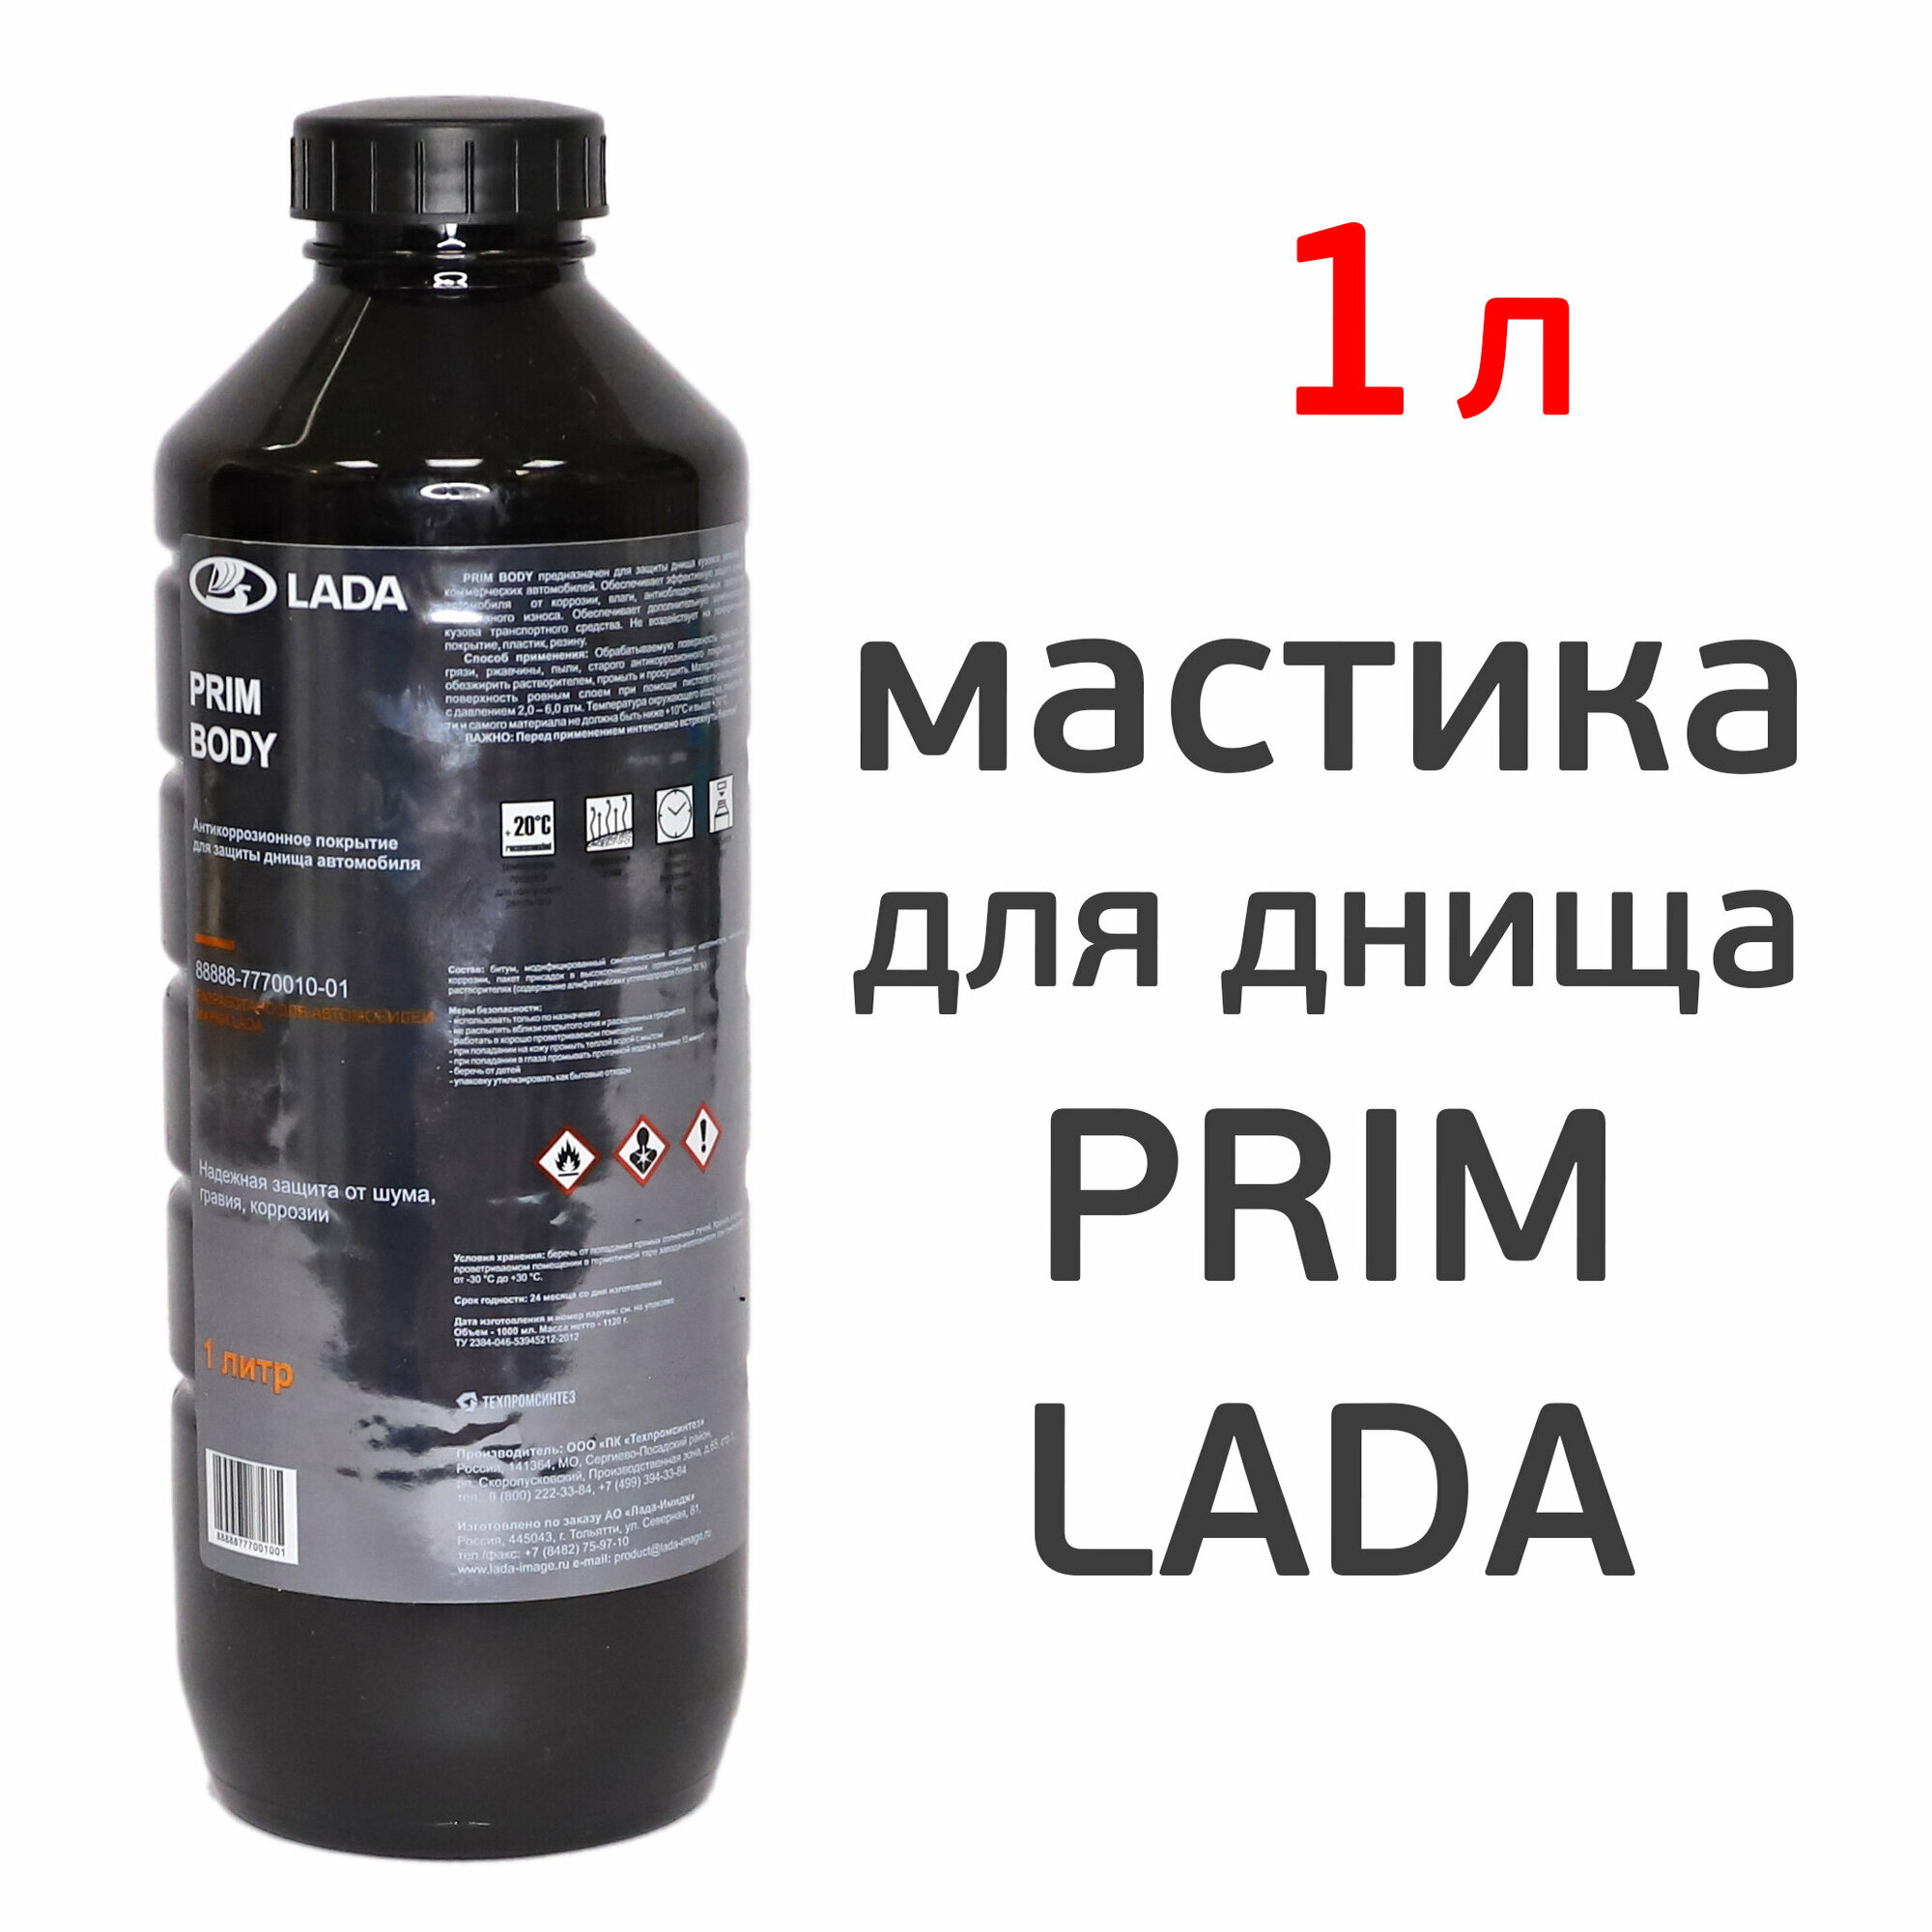 Мастика для днища PRIM BODY LADA (1л) под пистолет пластиковый евробалон напыляемая шумоизоляция